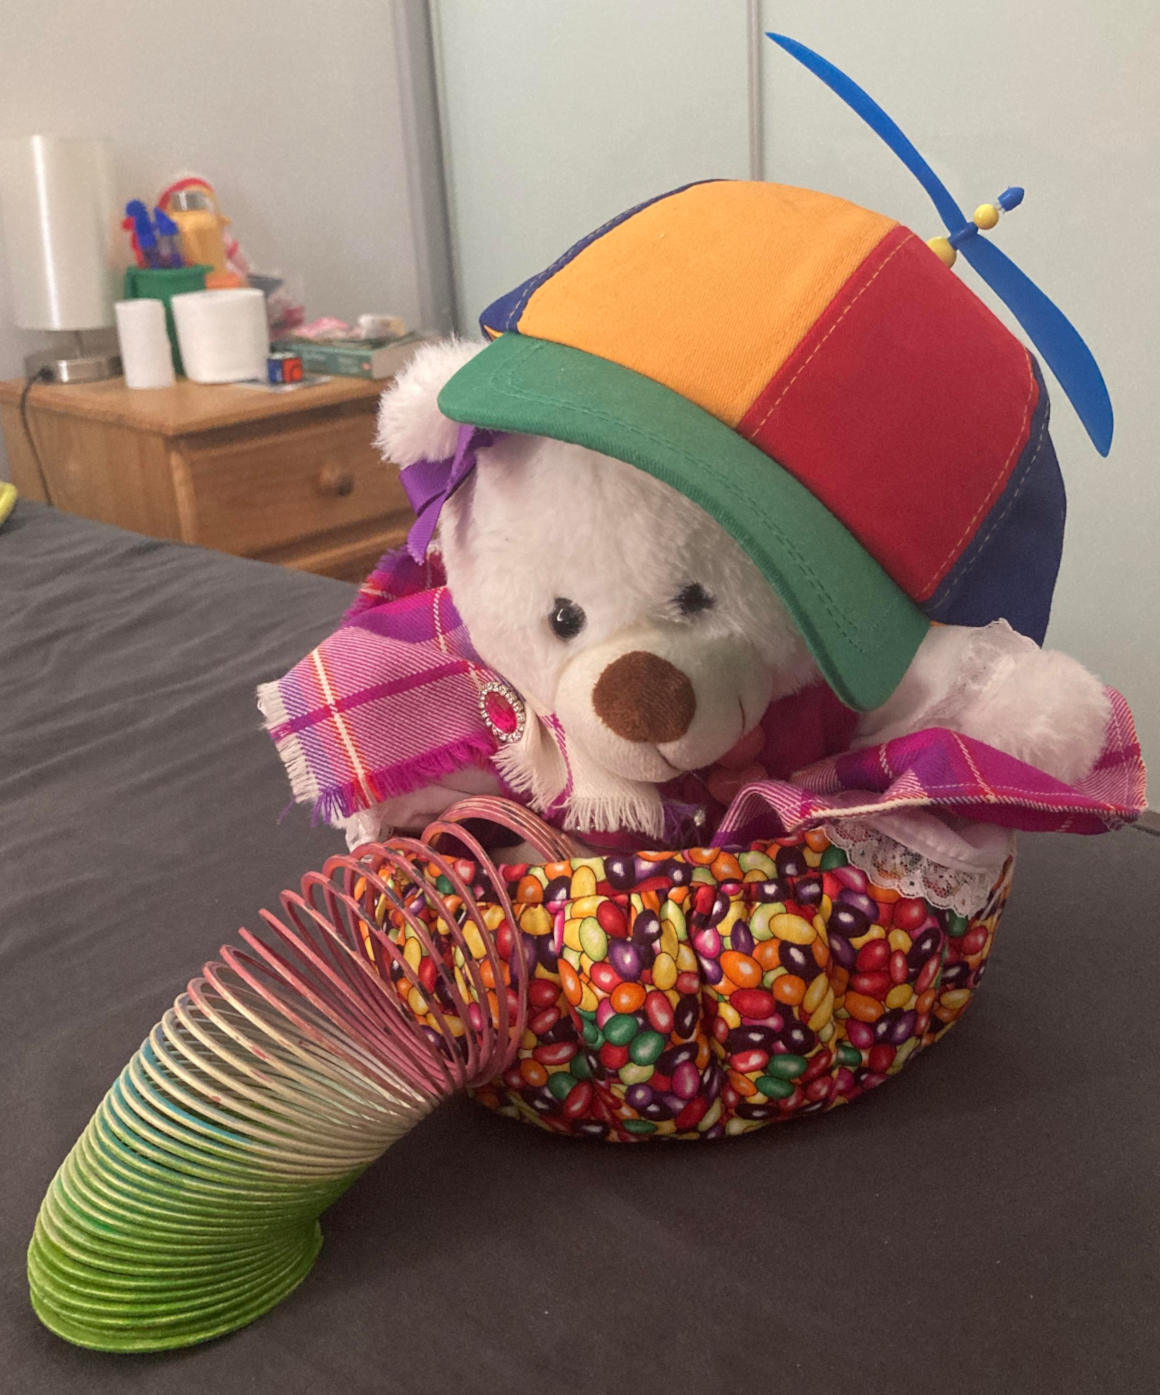 Teddy wearing flannel dress, proppeler hat. Holding watermelon pattern Slinky.